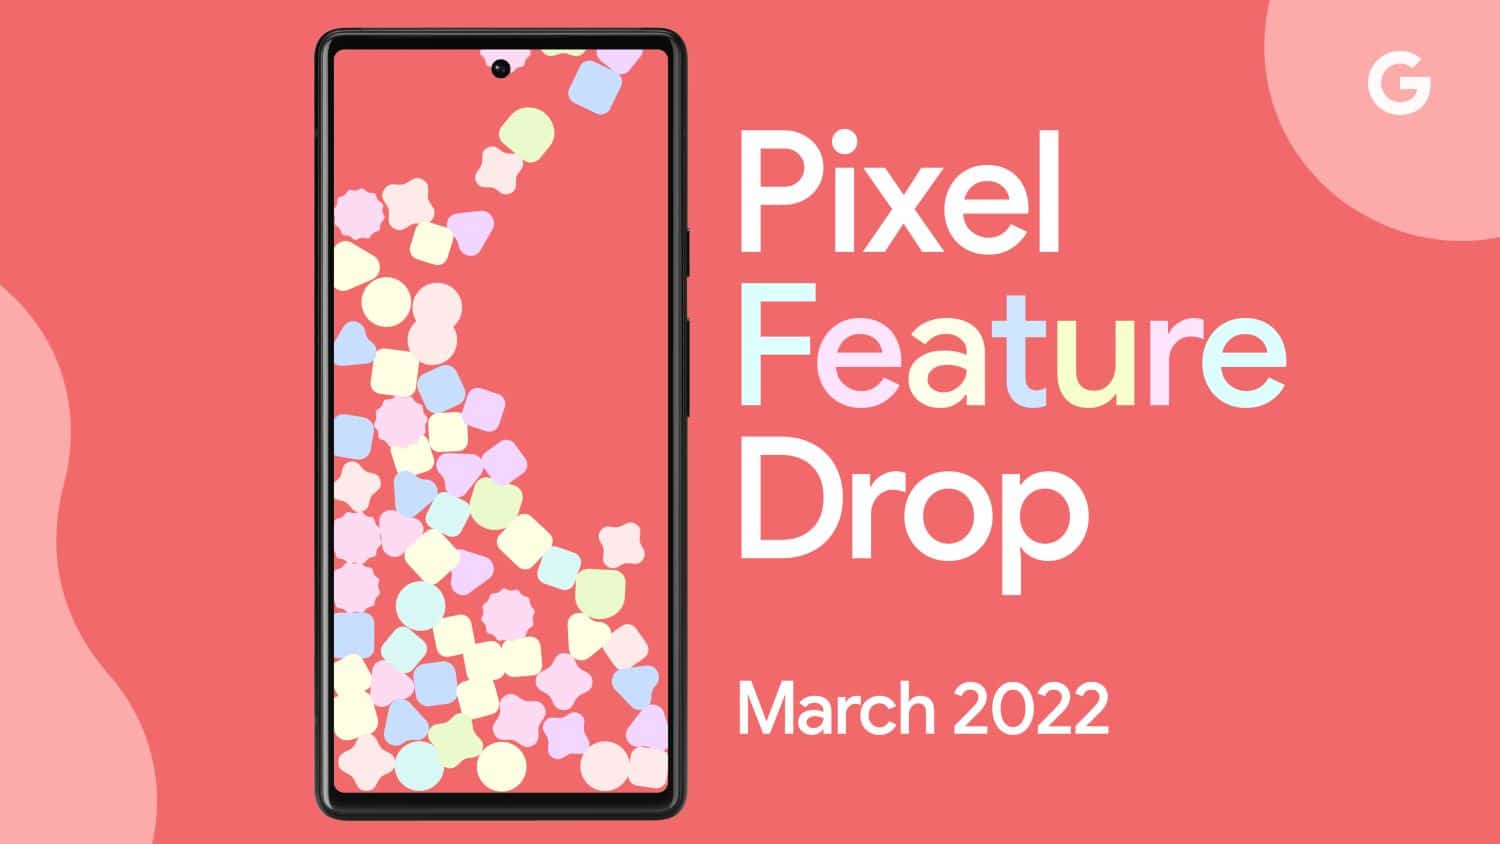 Pixel Drop March 2022